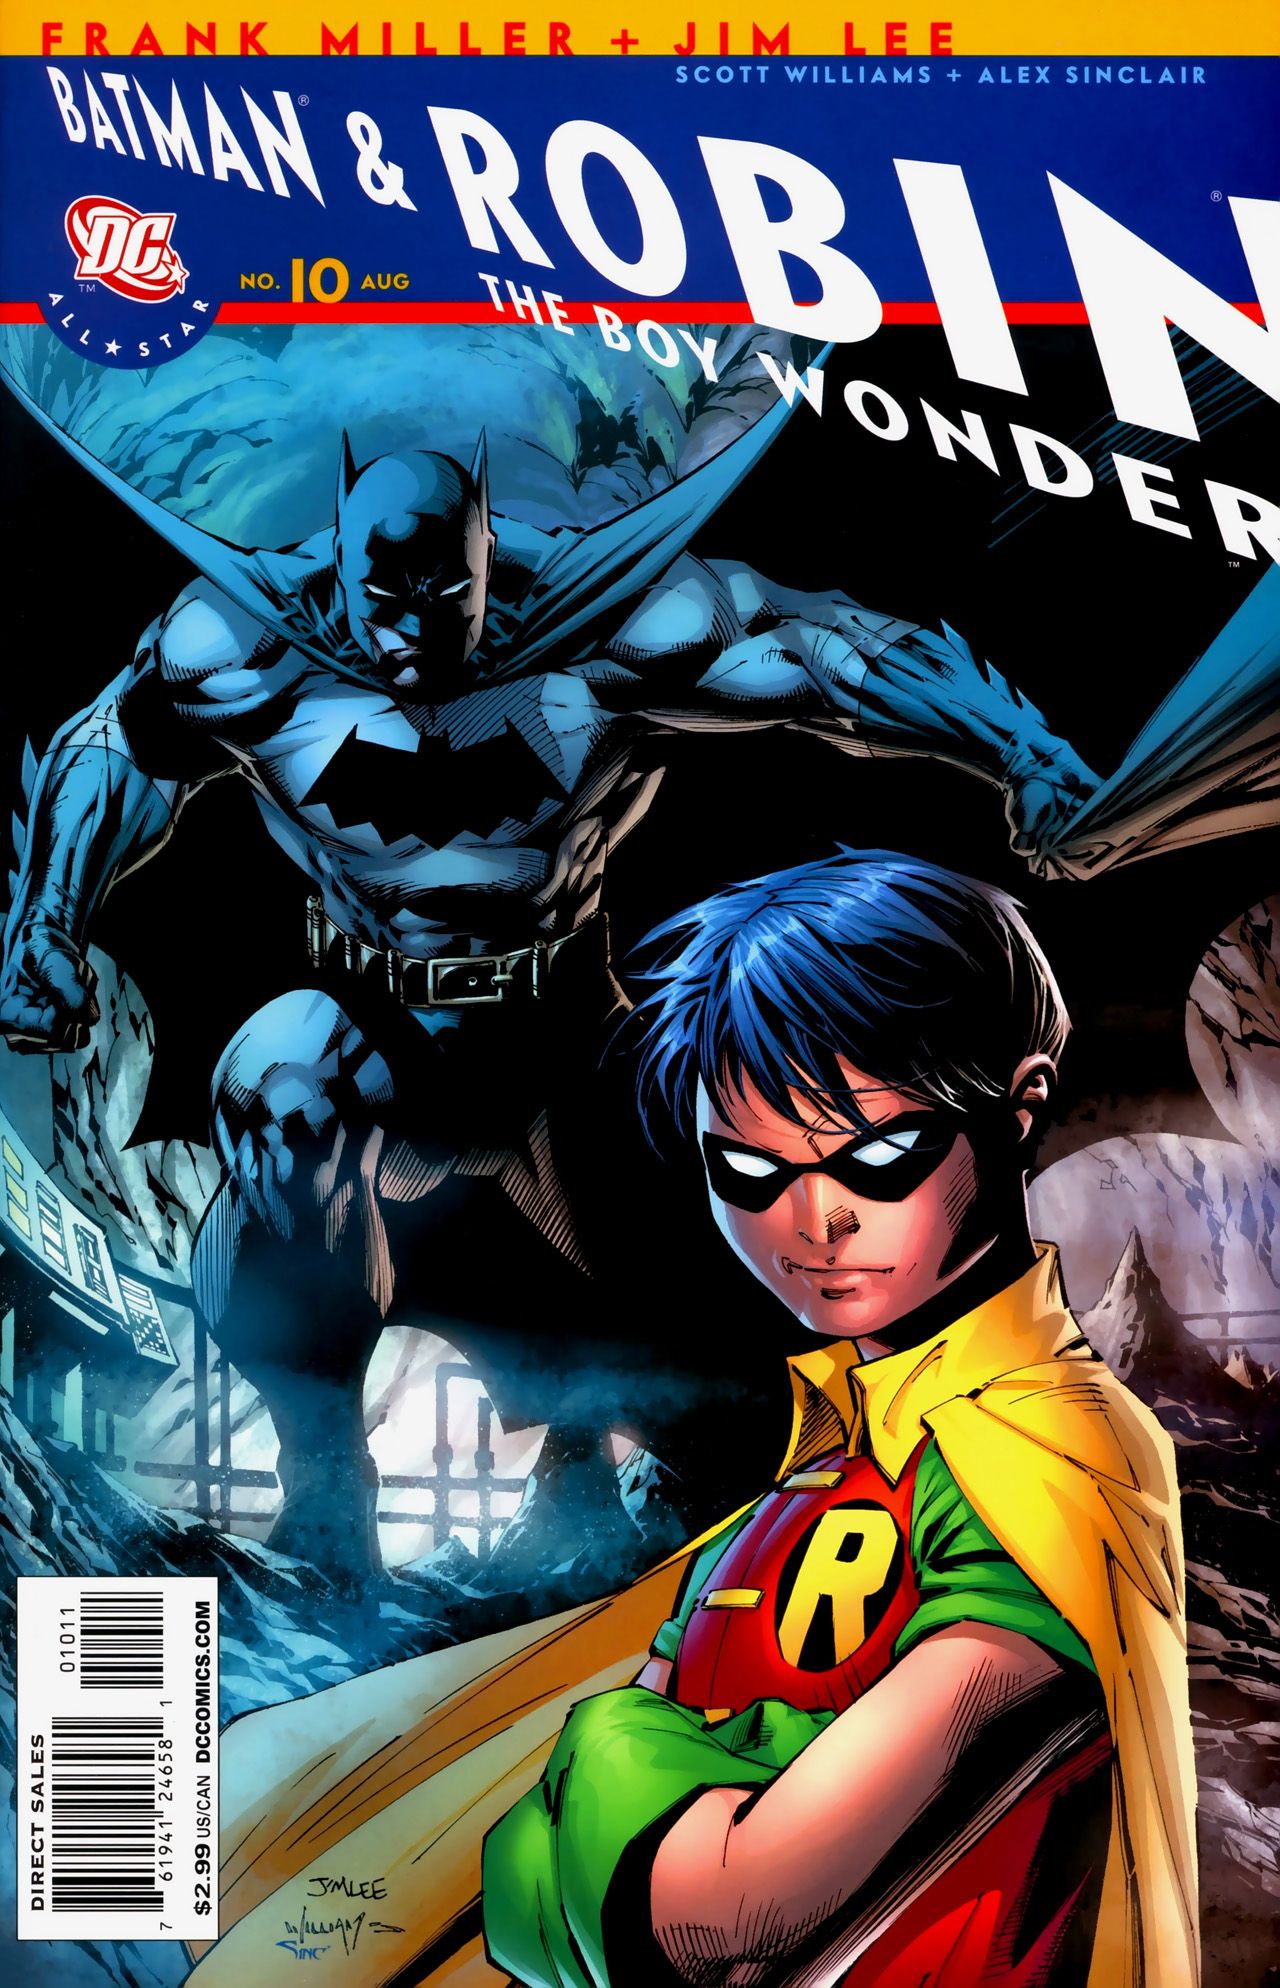 All-Star Batman & Robin not cancelled